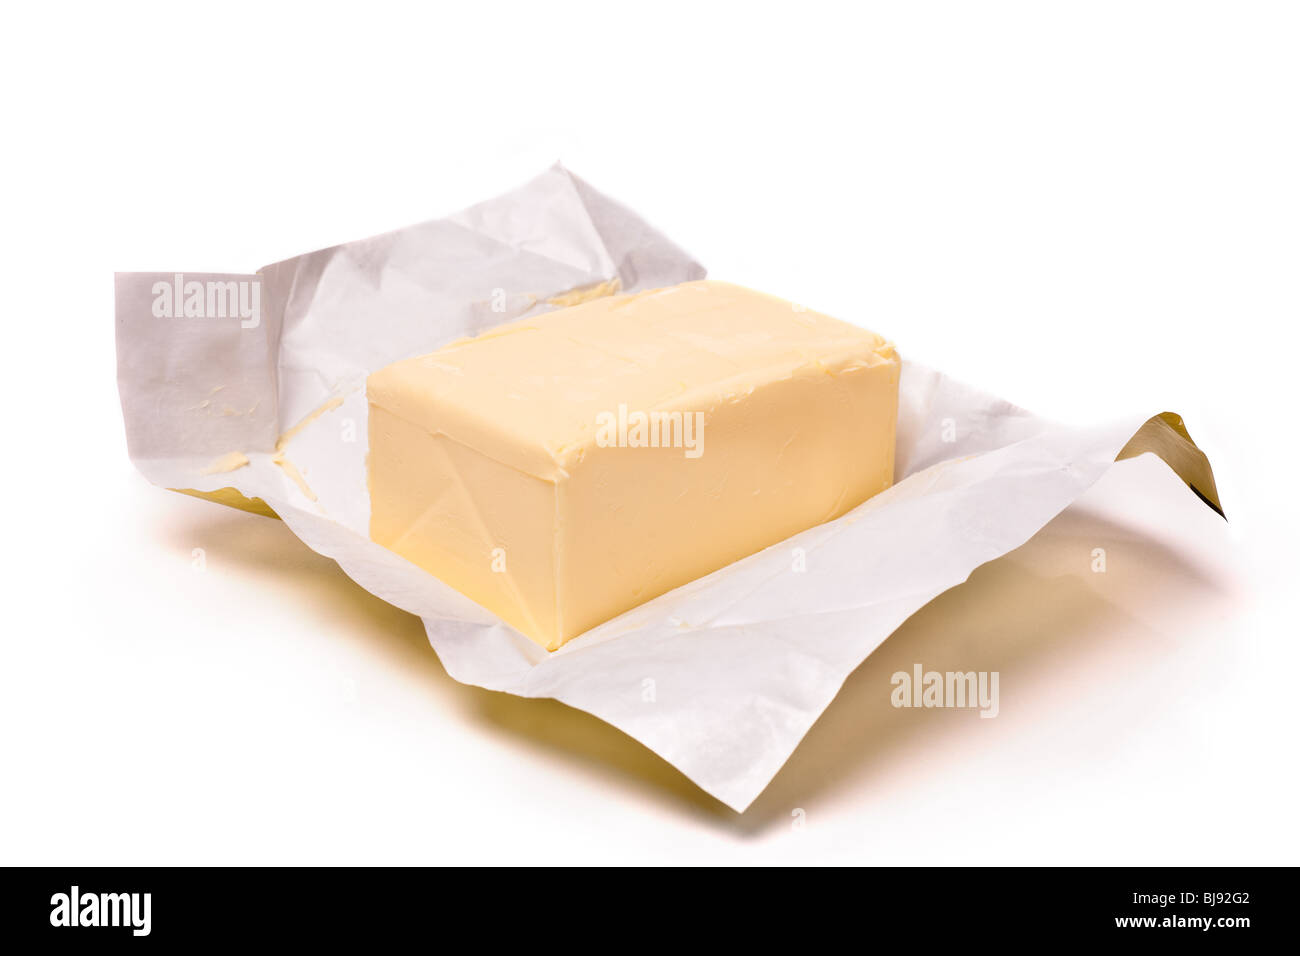 Trozo de mantequilla en papel sobre un fondo blanco. Enfoque superficial Foto de stock